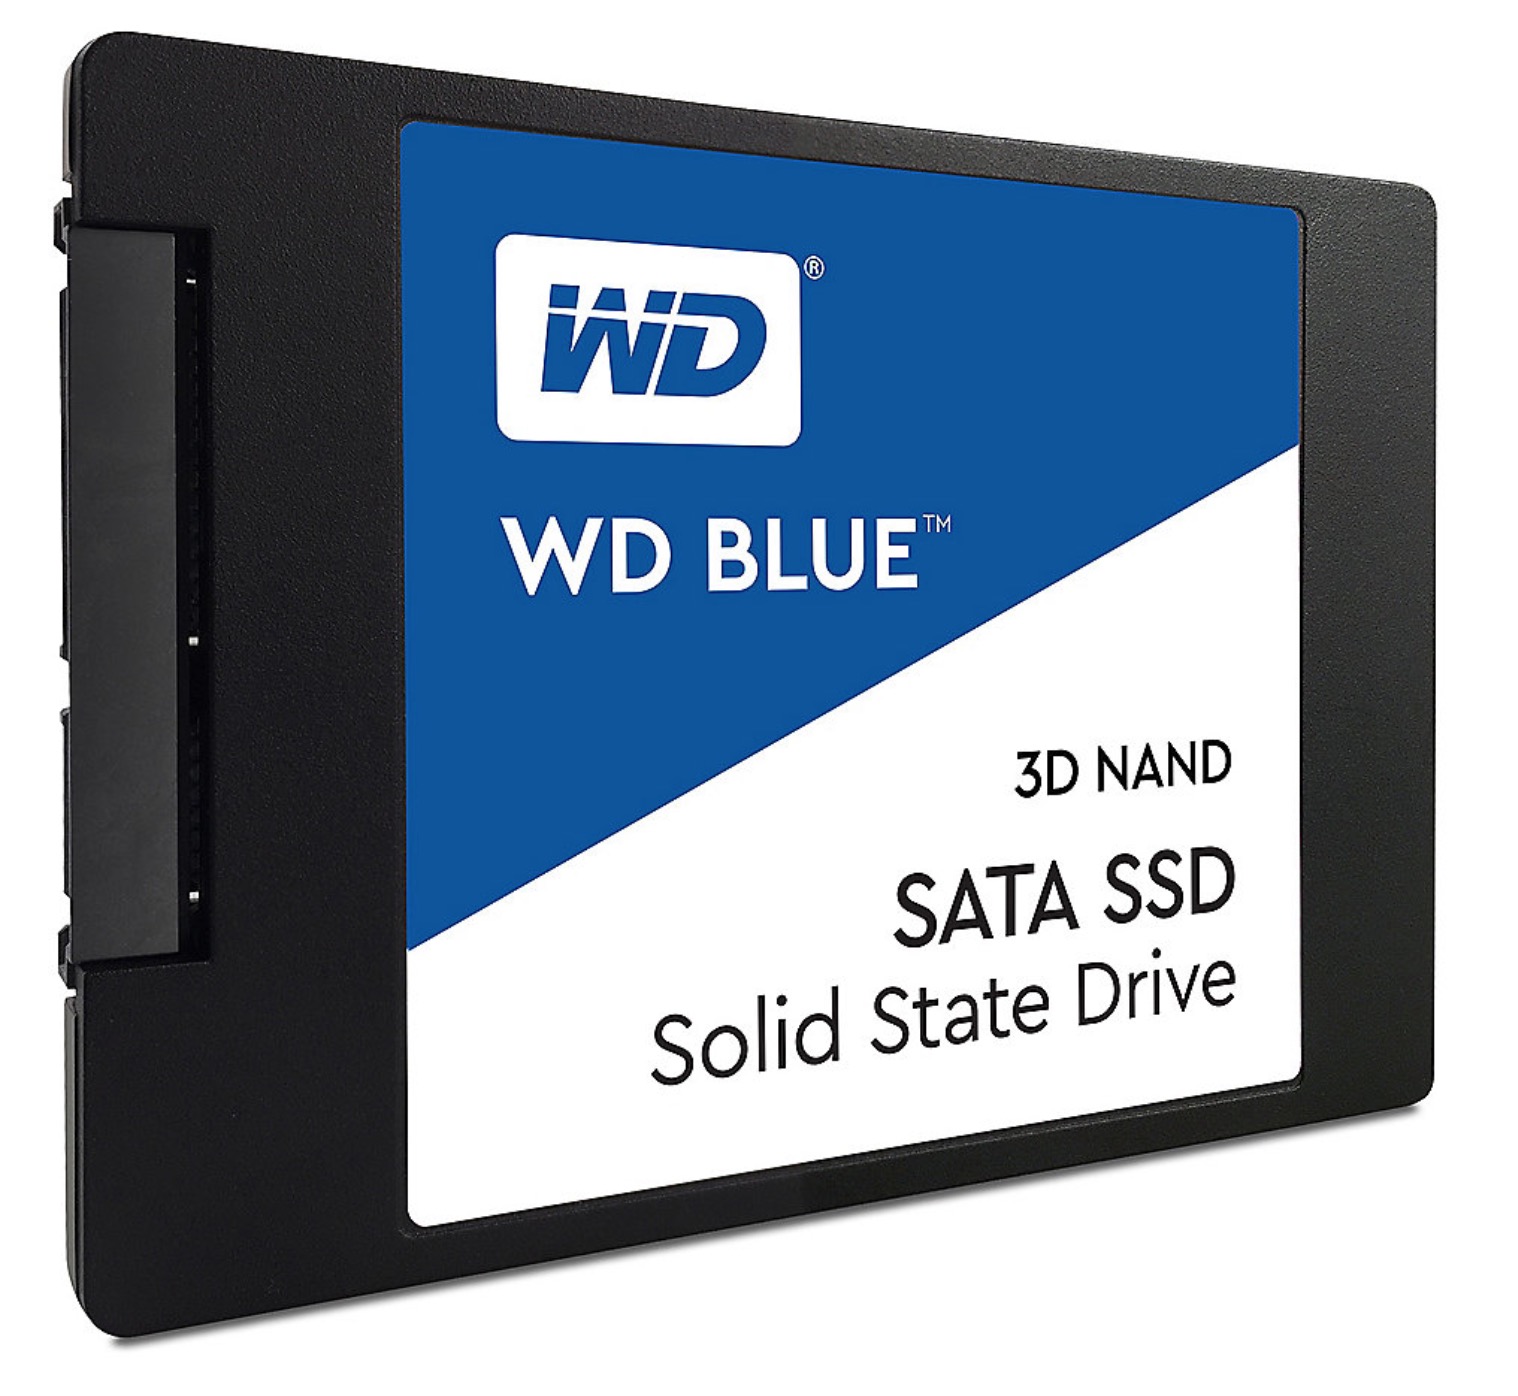 WD Blue 3D NAND SATA SSD 1 TB für nur 84,90 Euro inkl. Versand